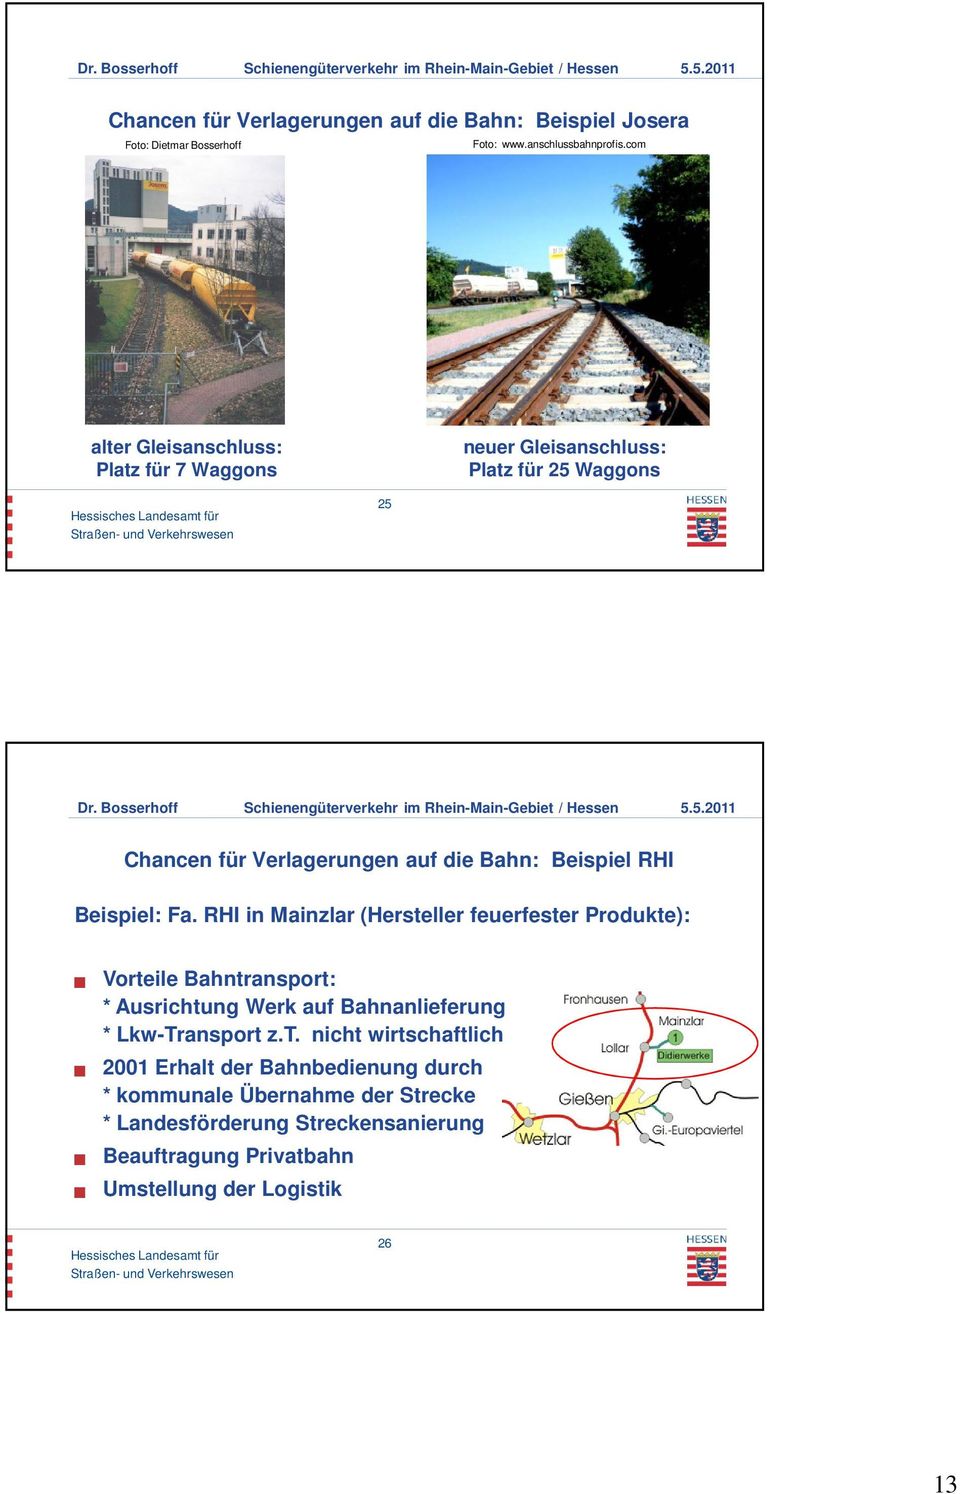 Beispiel: Fa. RHI in Mainzlar (Hersteller feuerfester Produkte): Vorteile Bahntransport: * Ausrichtung Werk auf Bahnanlieferung * Lkw-Transport z.